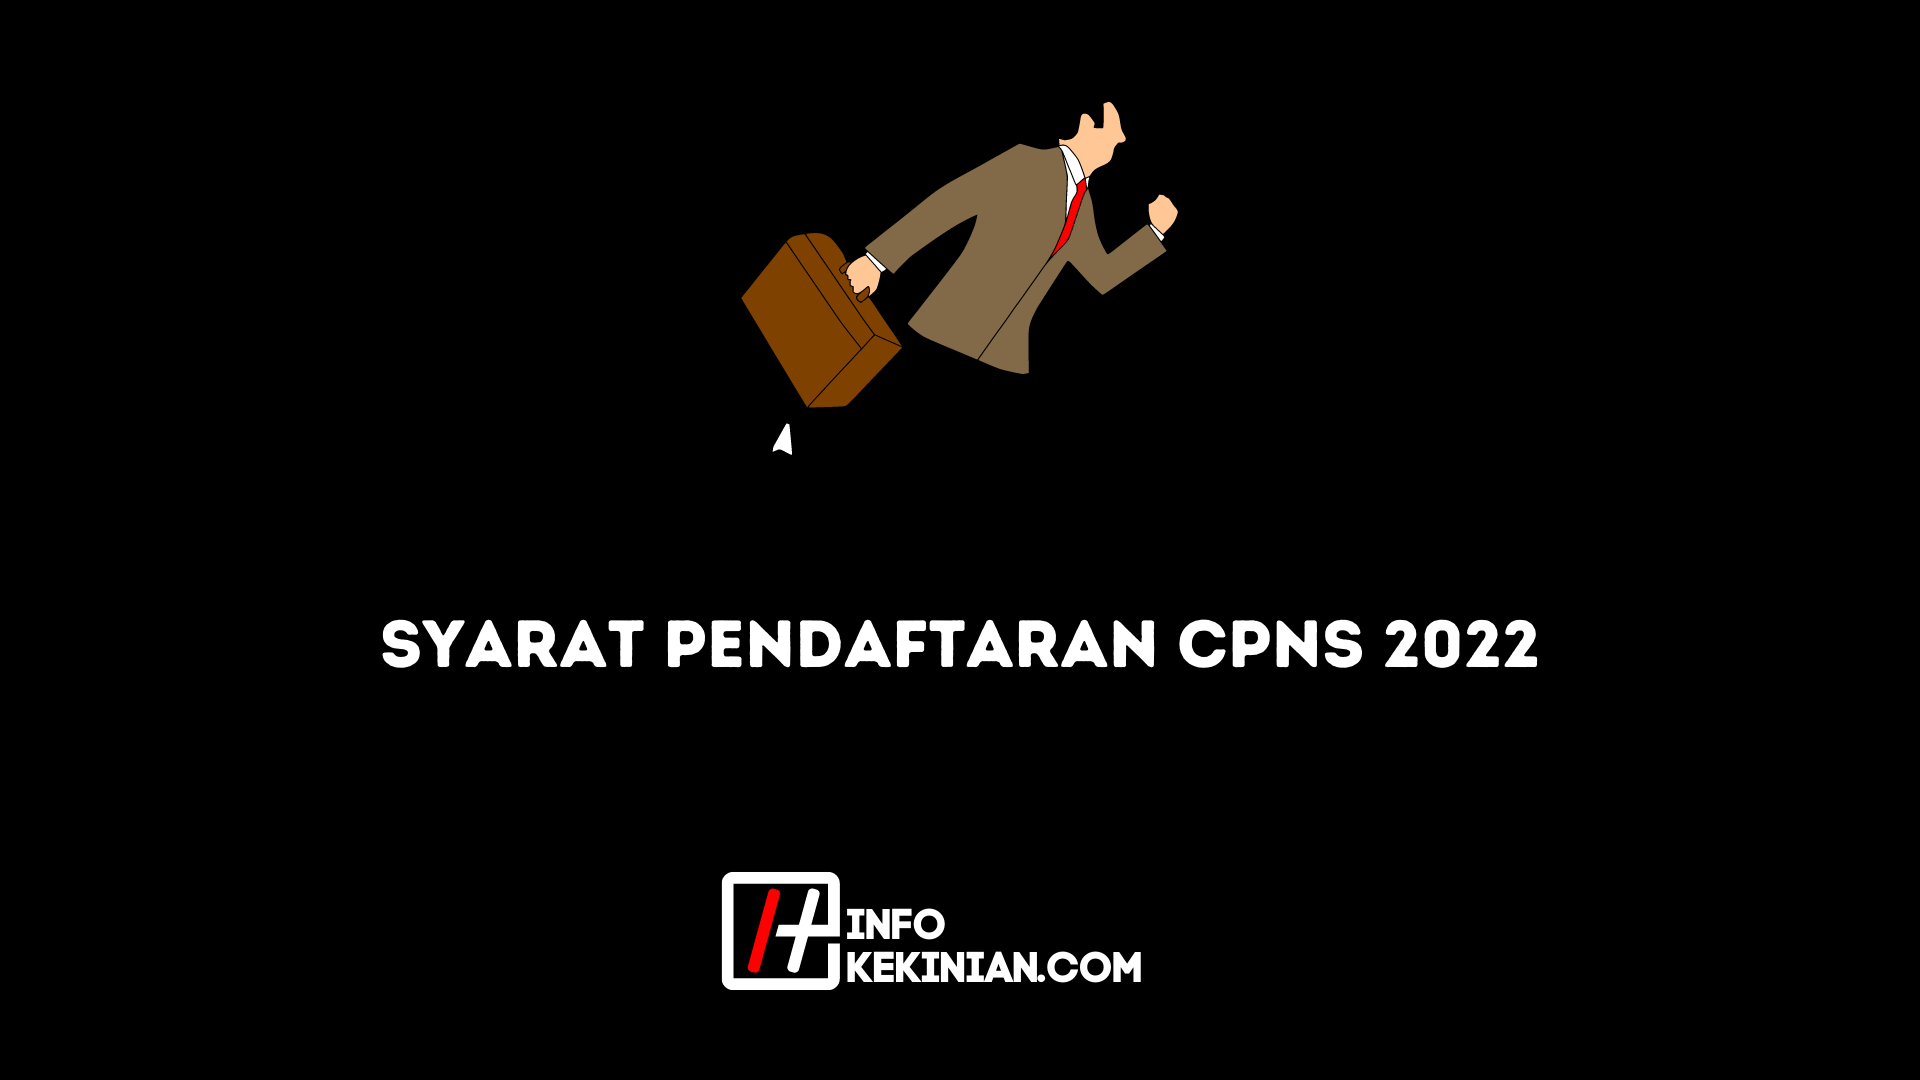 2022 CPNS-Registrierungsanforderungen